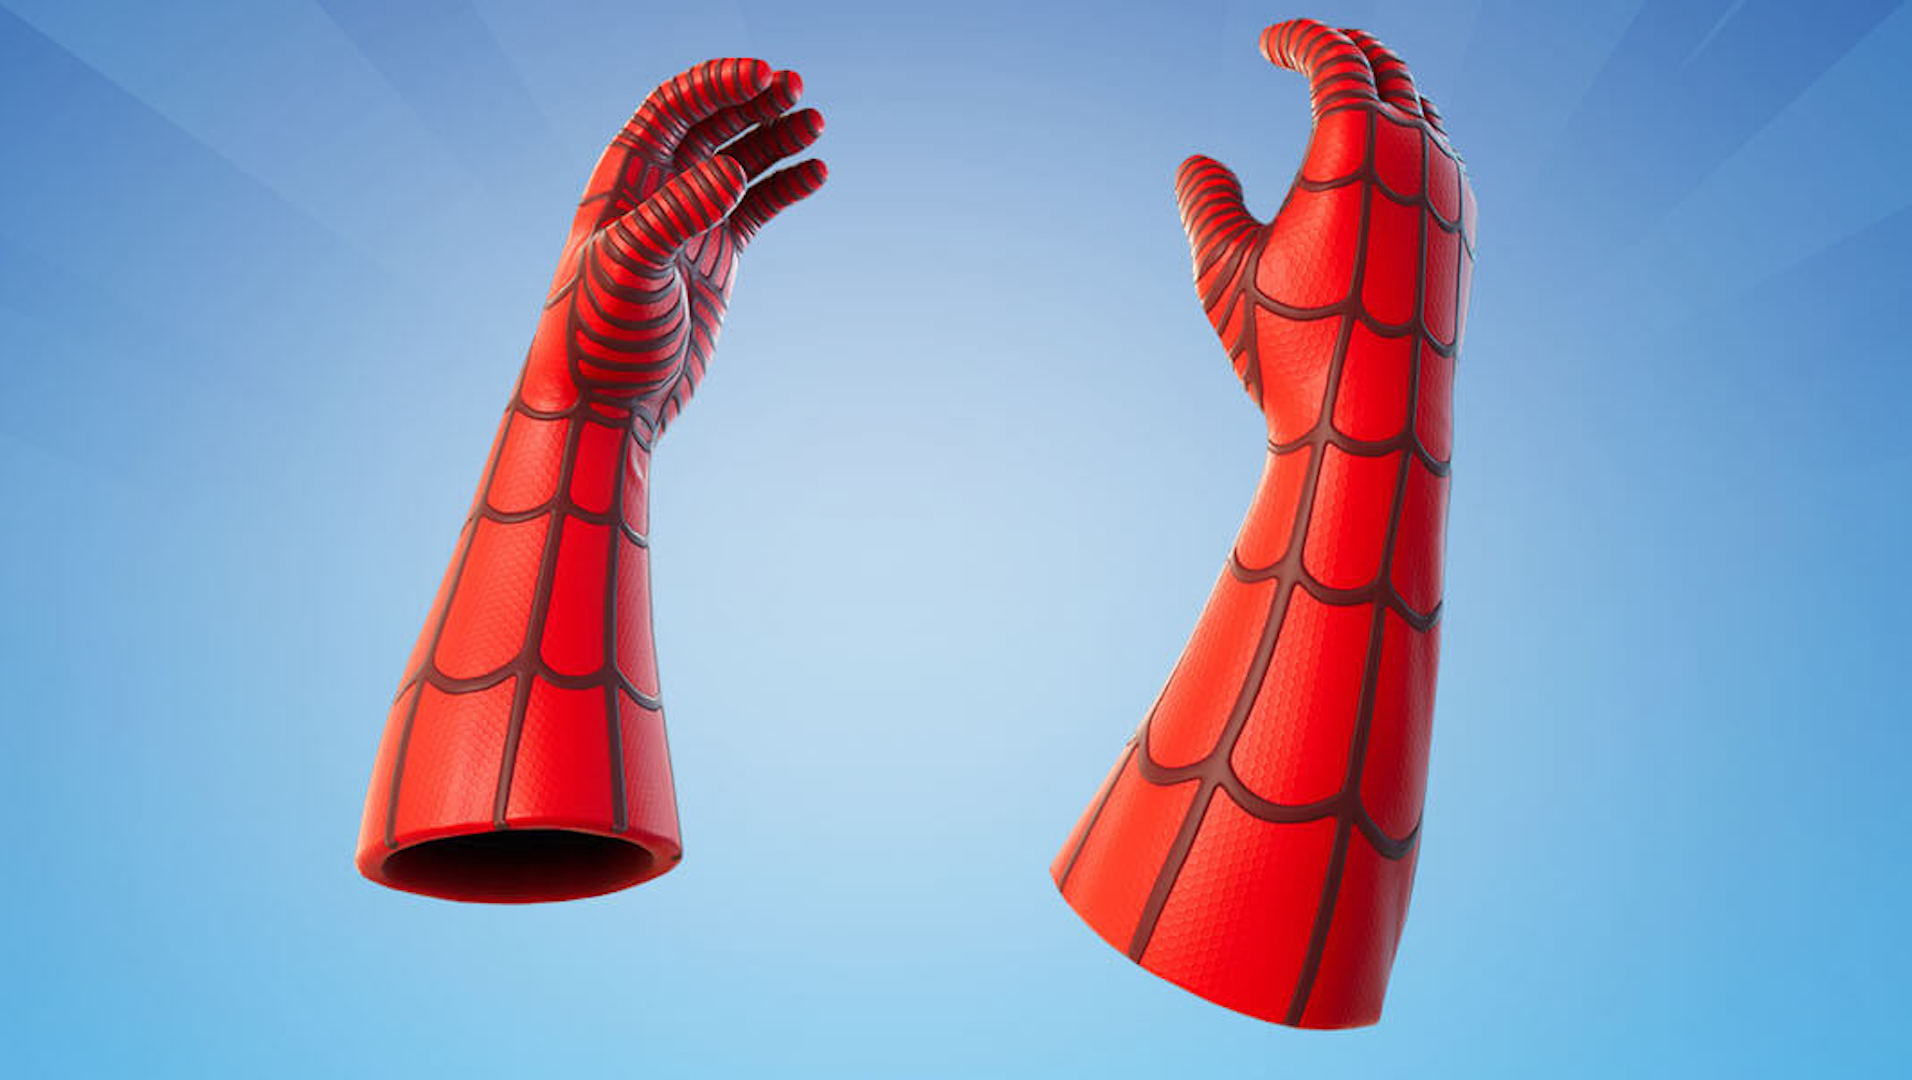 Fortnite Chapitre 3: où trouver les gants de Spider-Man dans le